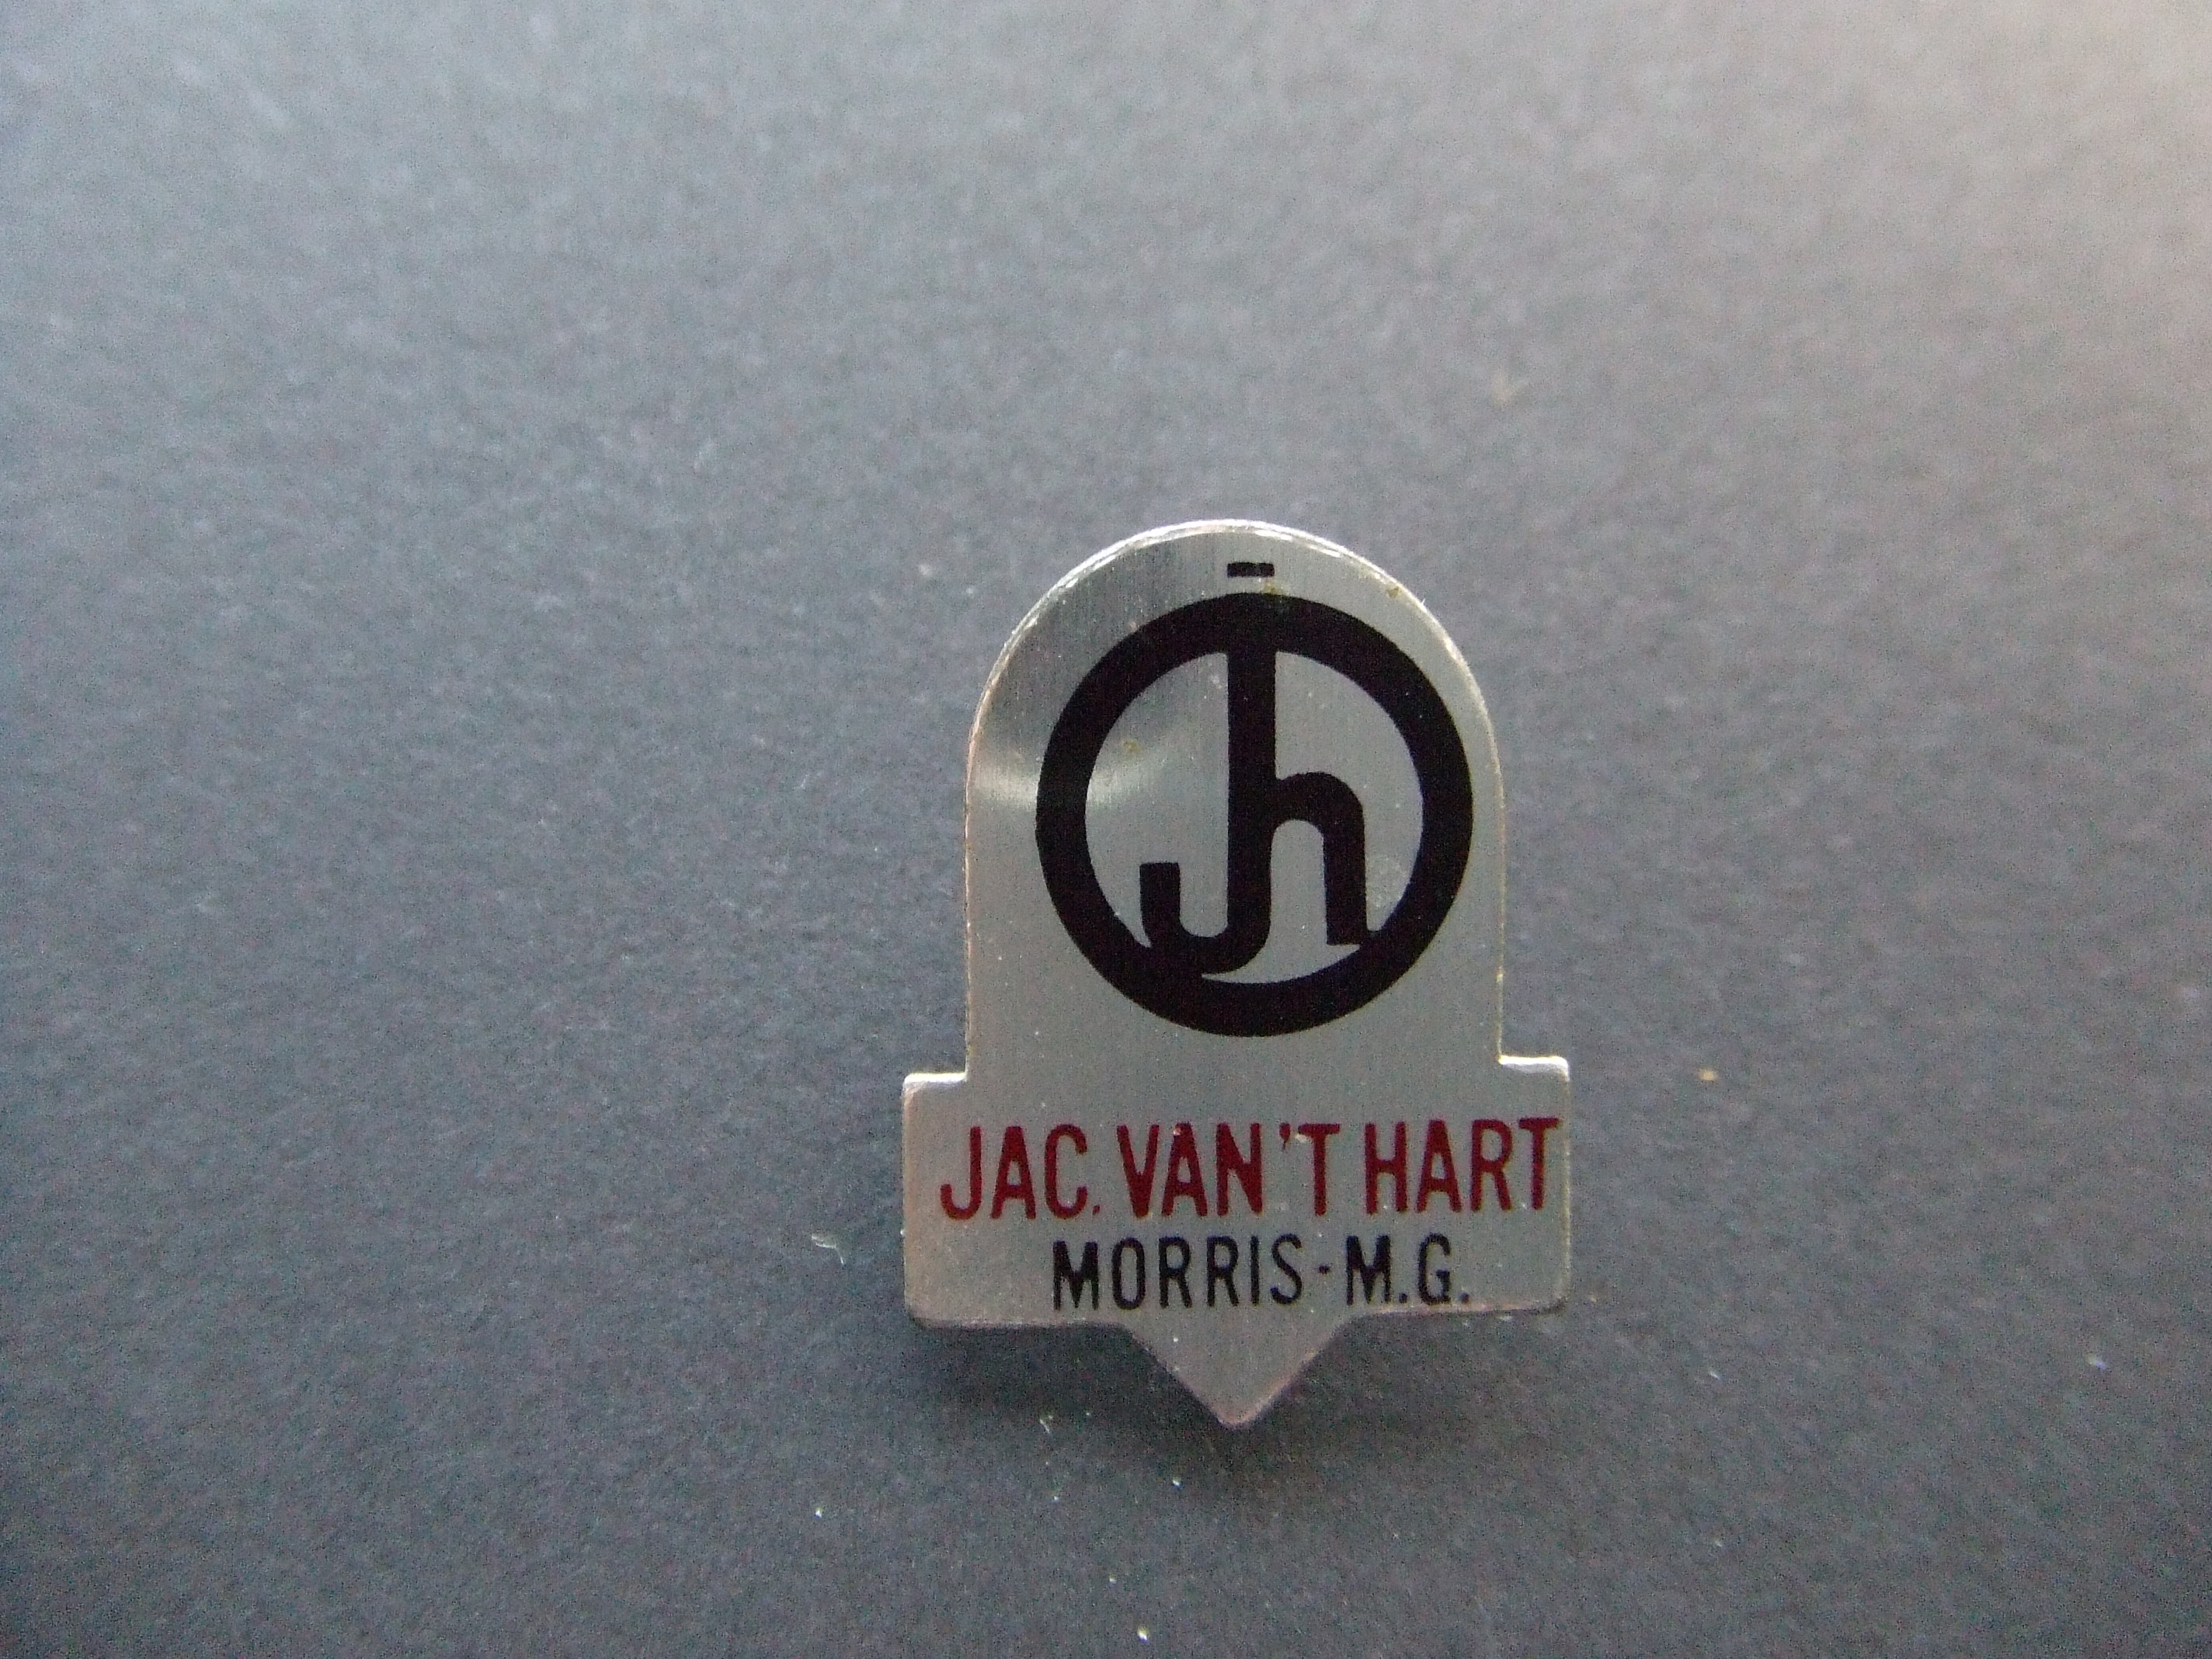 Jac van t'Hart Austin Morris, MG dealer